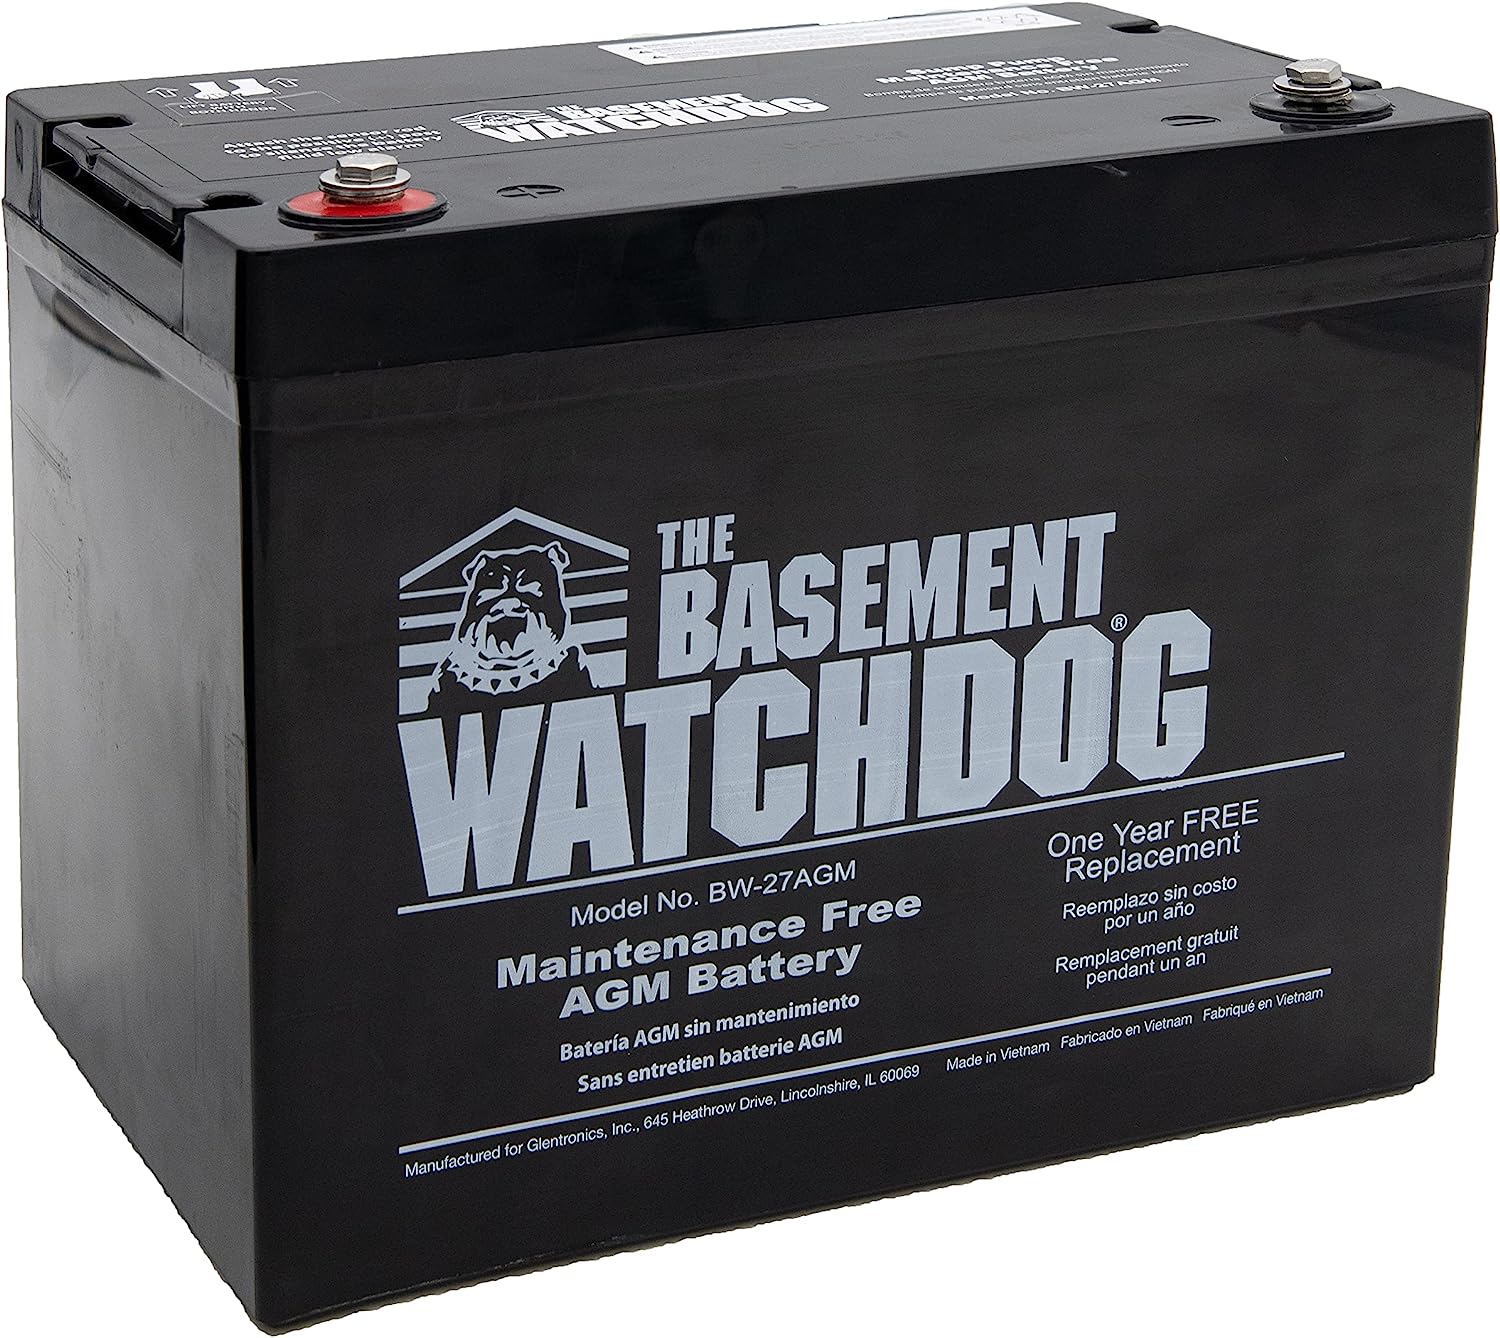 THE BASEMENT WATCHDOG Model BW-27AGM Maintenance Free [...]